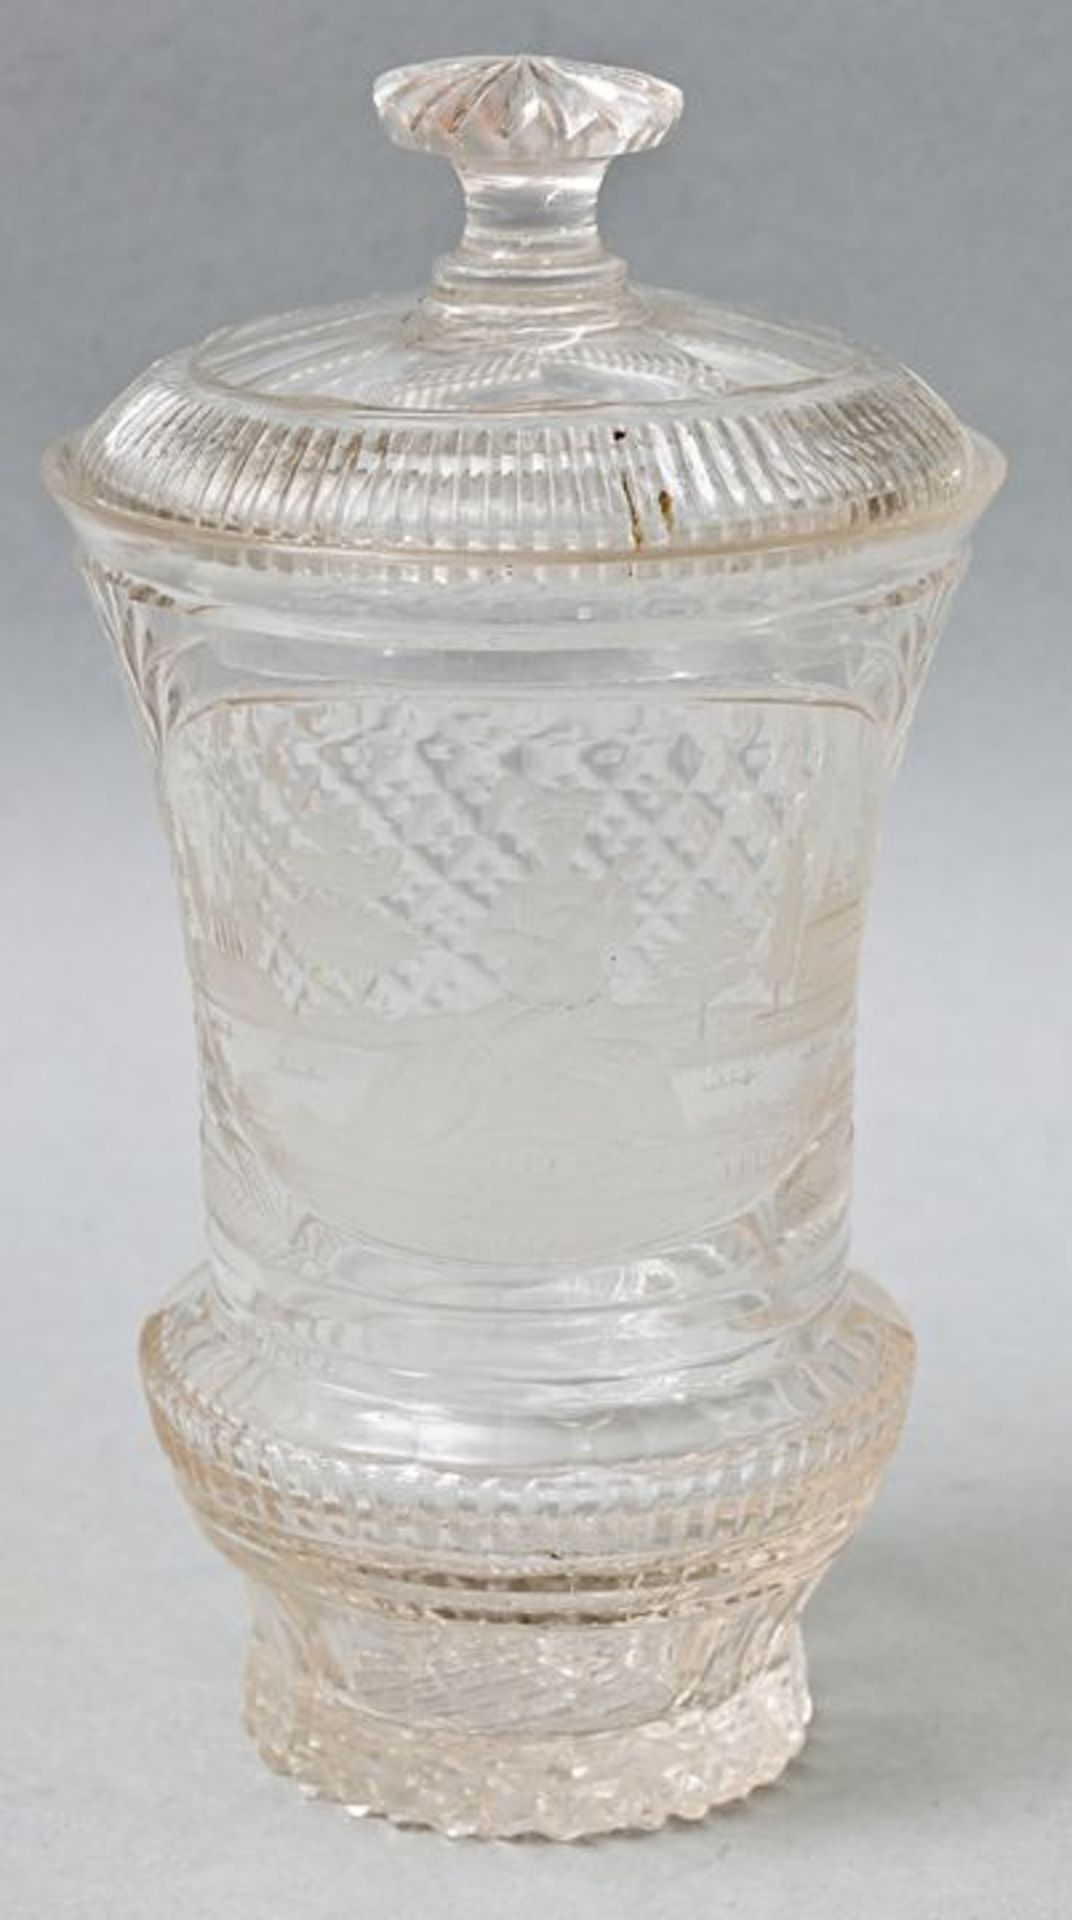 Deckelbecher/ lidded glass beaker